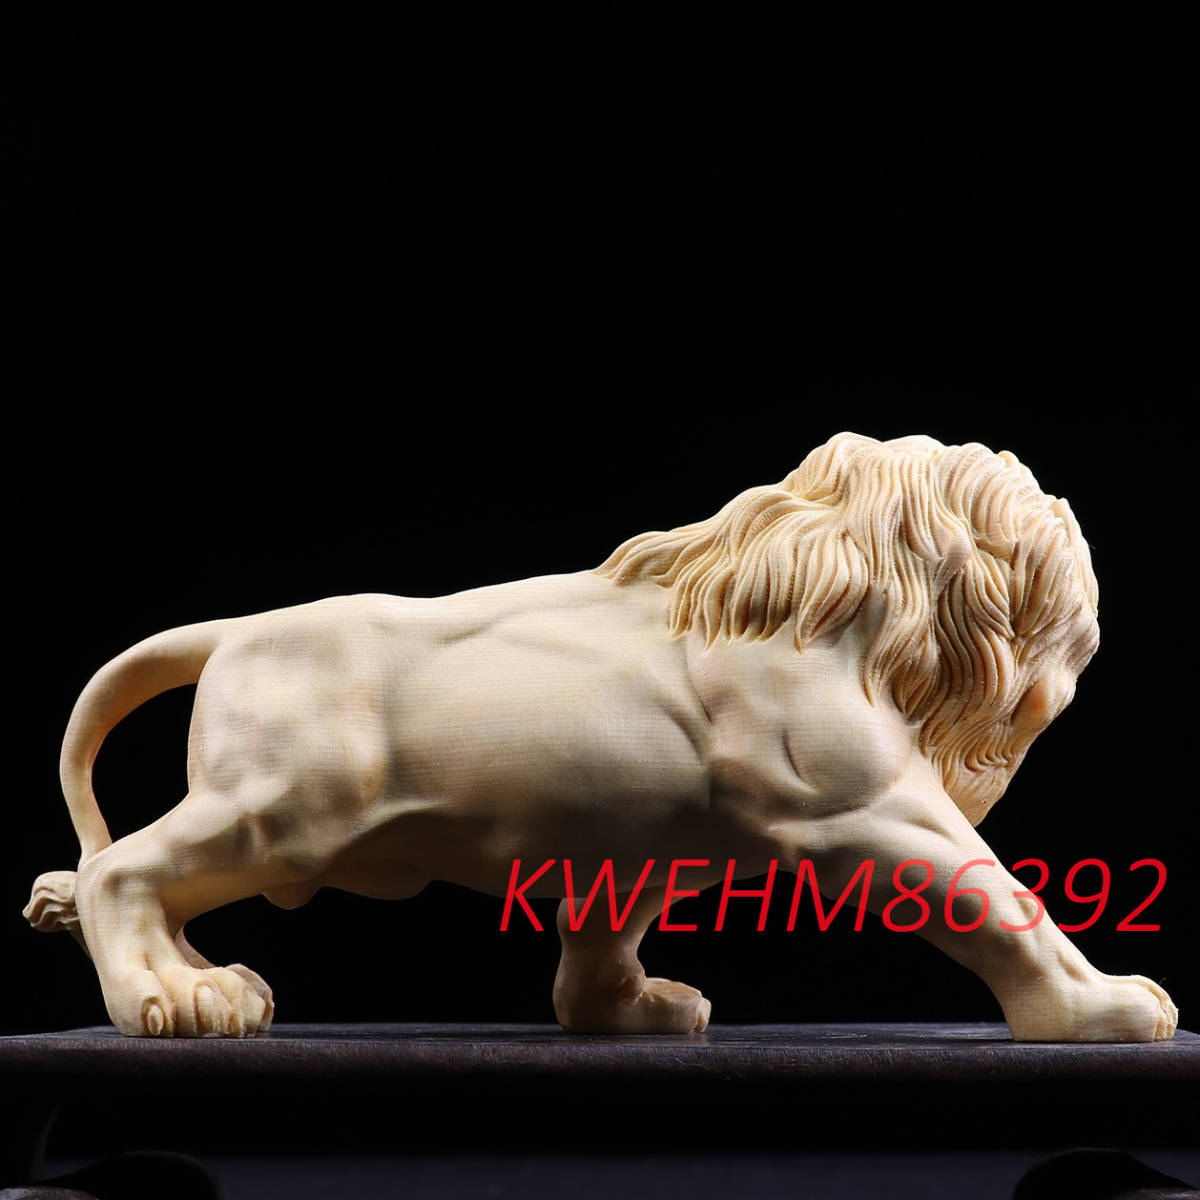 緑起物 万獣の王 獅子 置物 木彫り 精彫造像 美術工芸品 獅子吼 一刀彫り _画像6